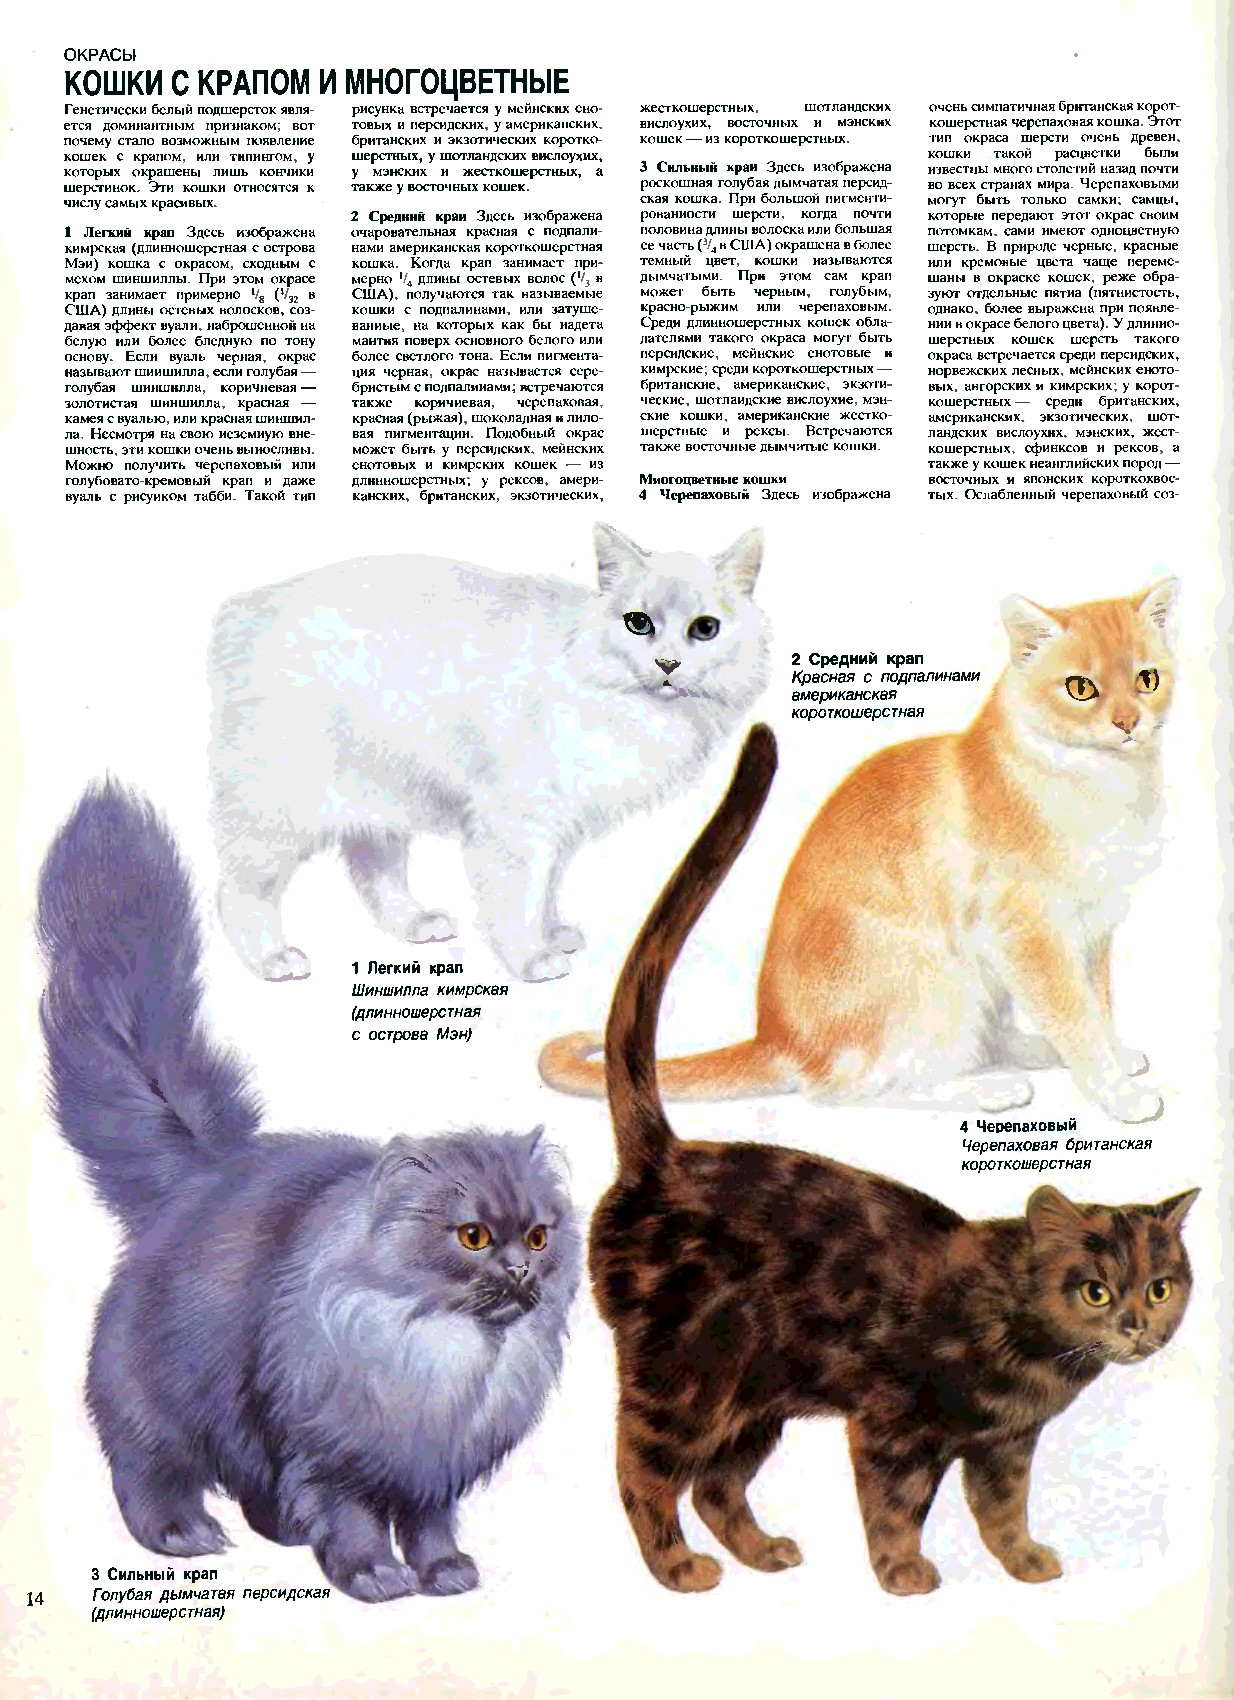 Топ-20 самых редких пород кошек в мире: цены на котят и особенности пород